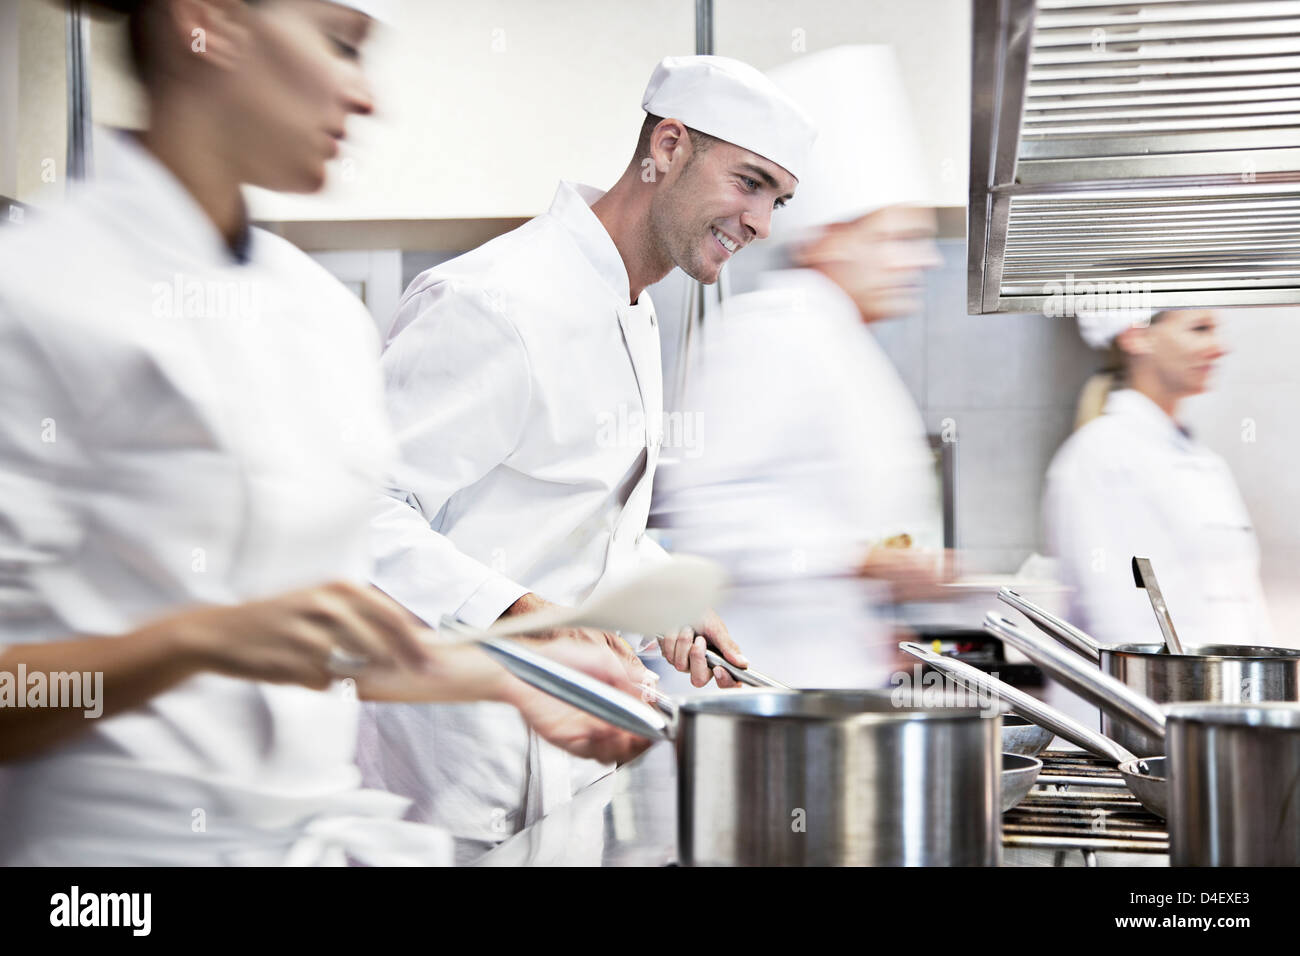 Chefs cooking in restaurant kitchen Stock Photo